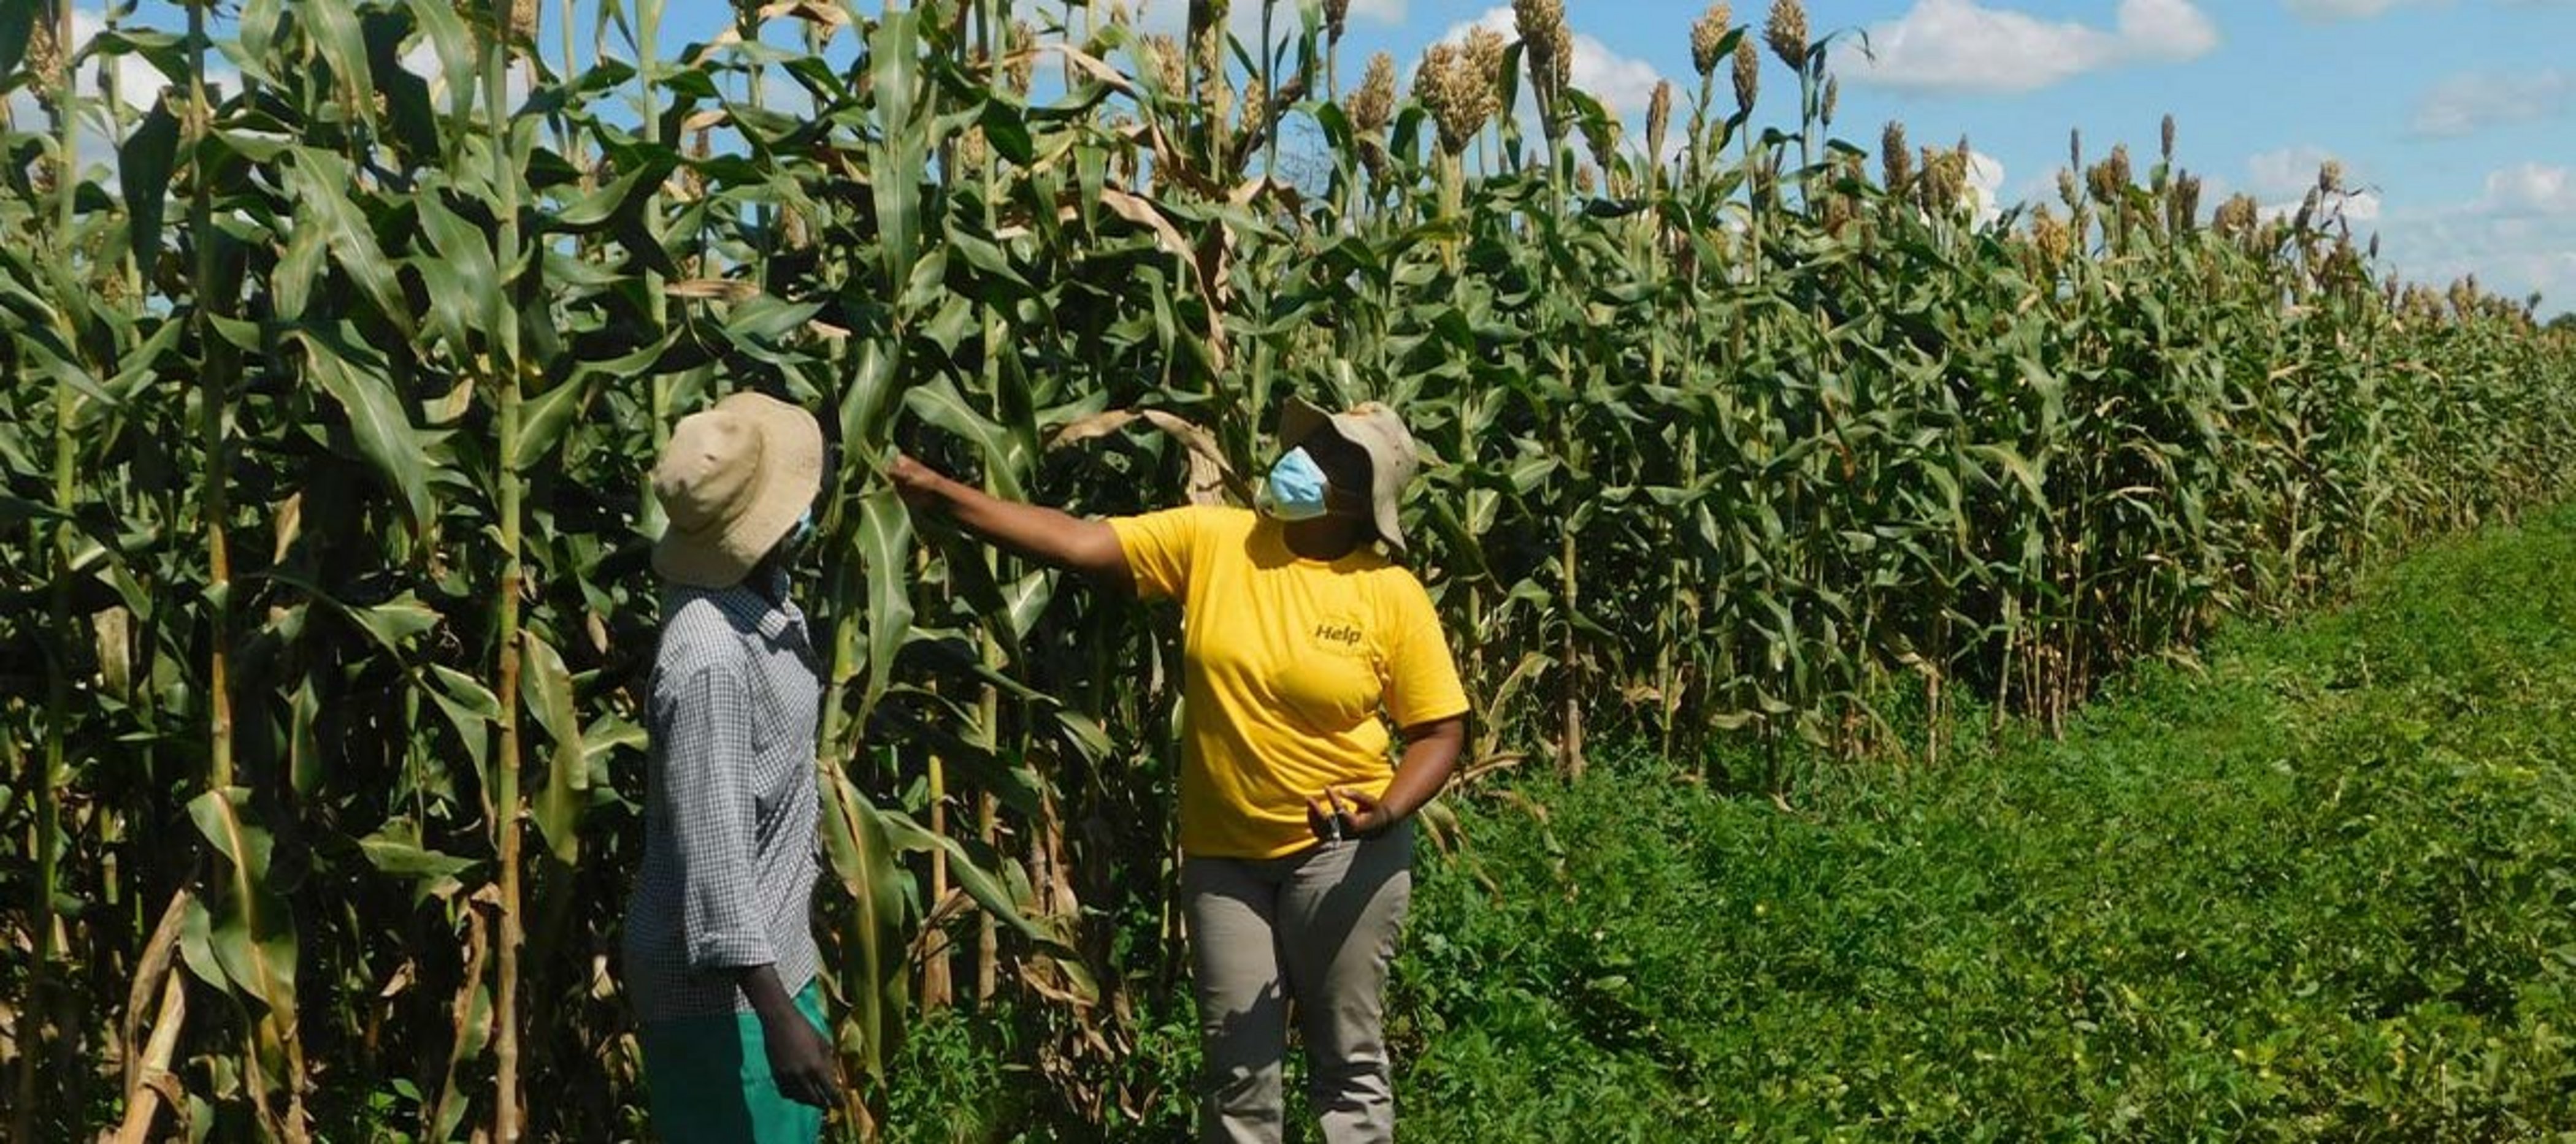 Spenden Simbabwe: Landwirtschaft fördern